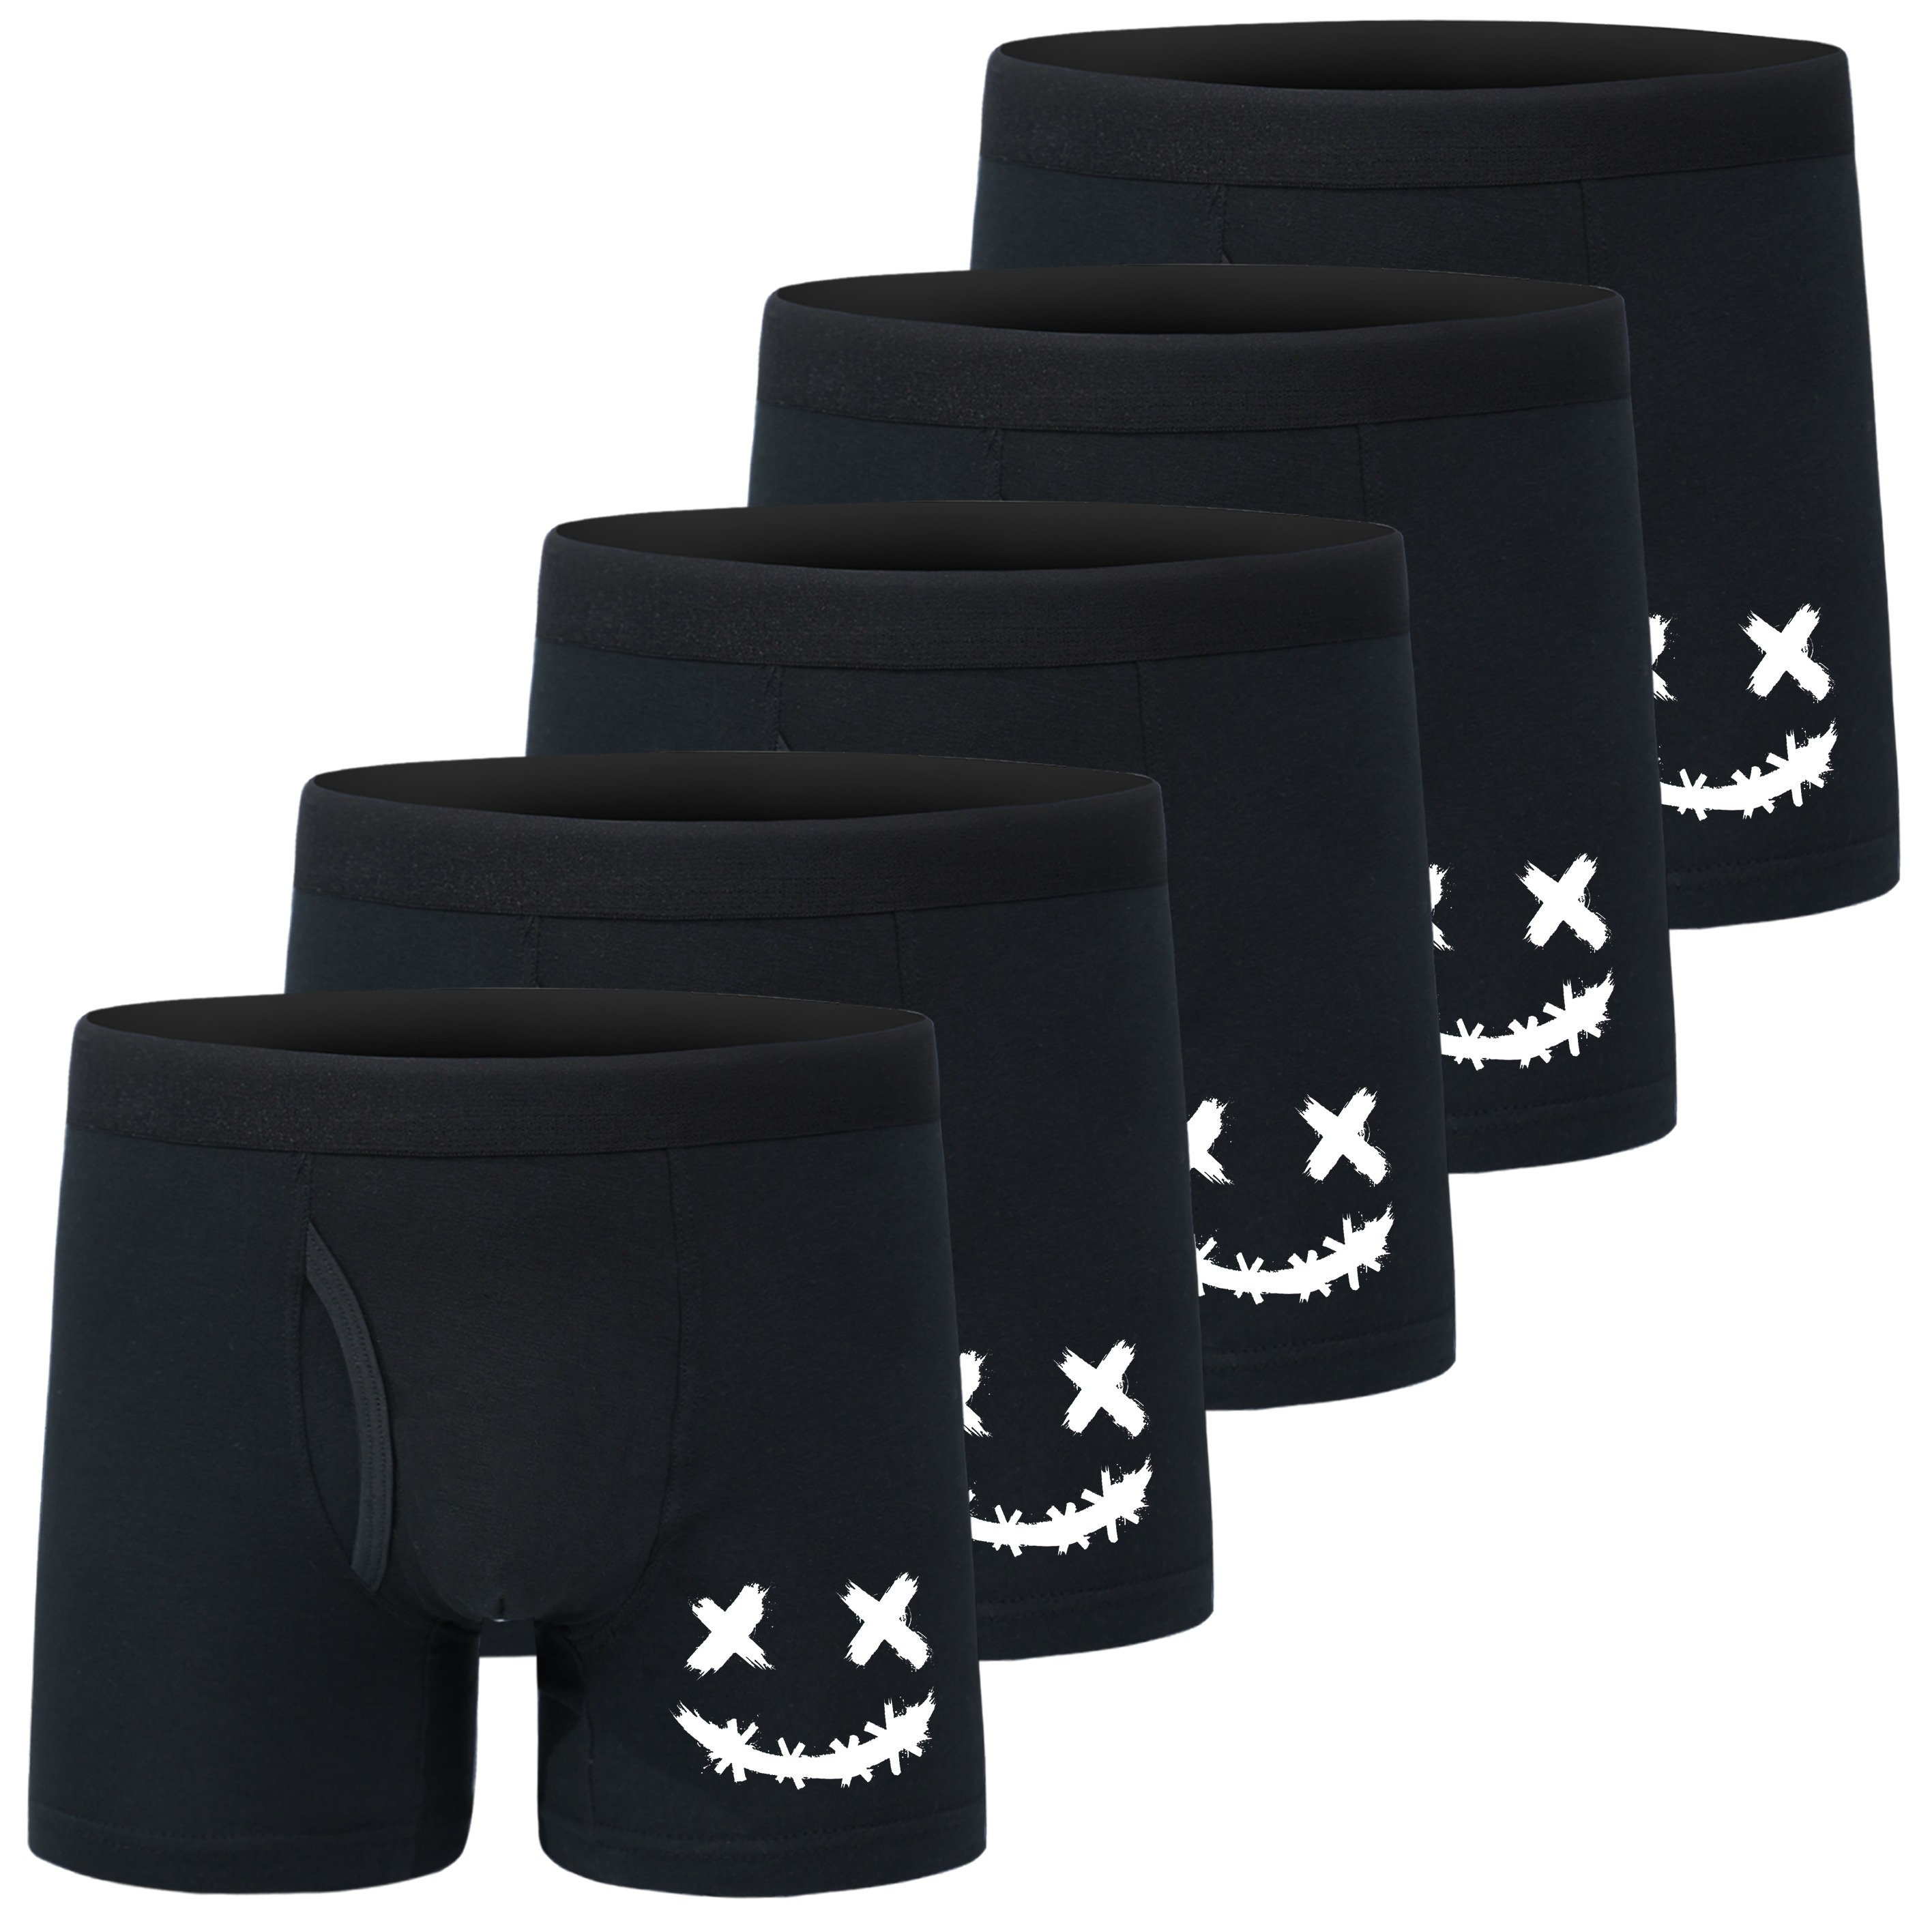 

5 Pcs Boy's Cotton Smile Face Briefs, Comfortable Breathable Underwear